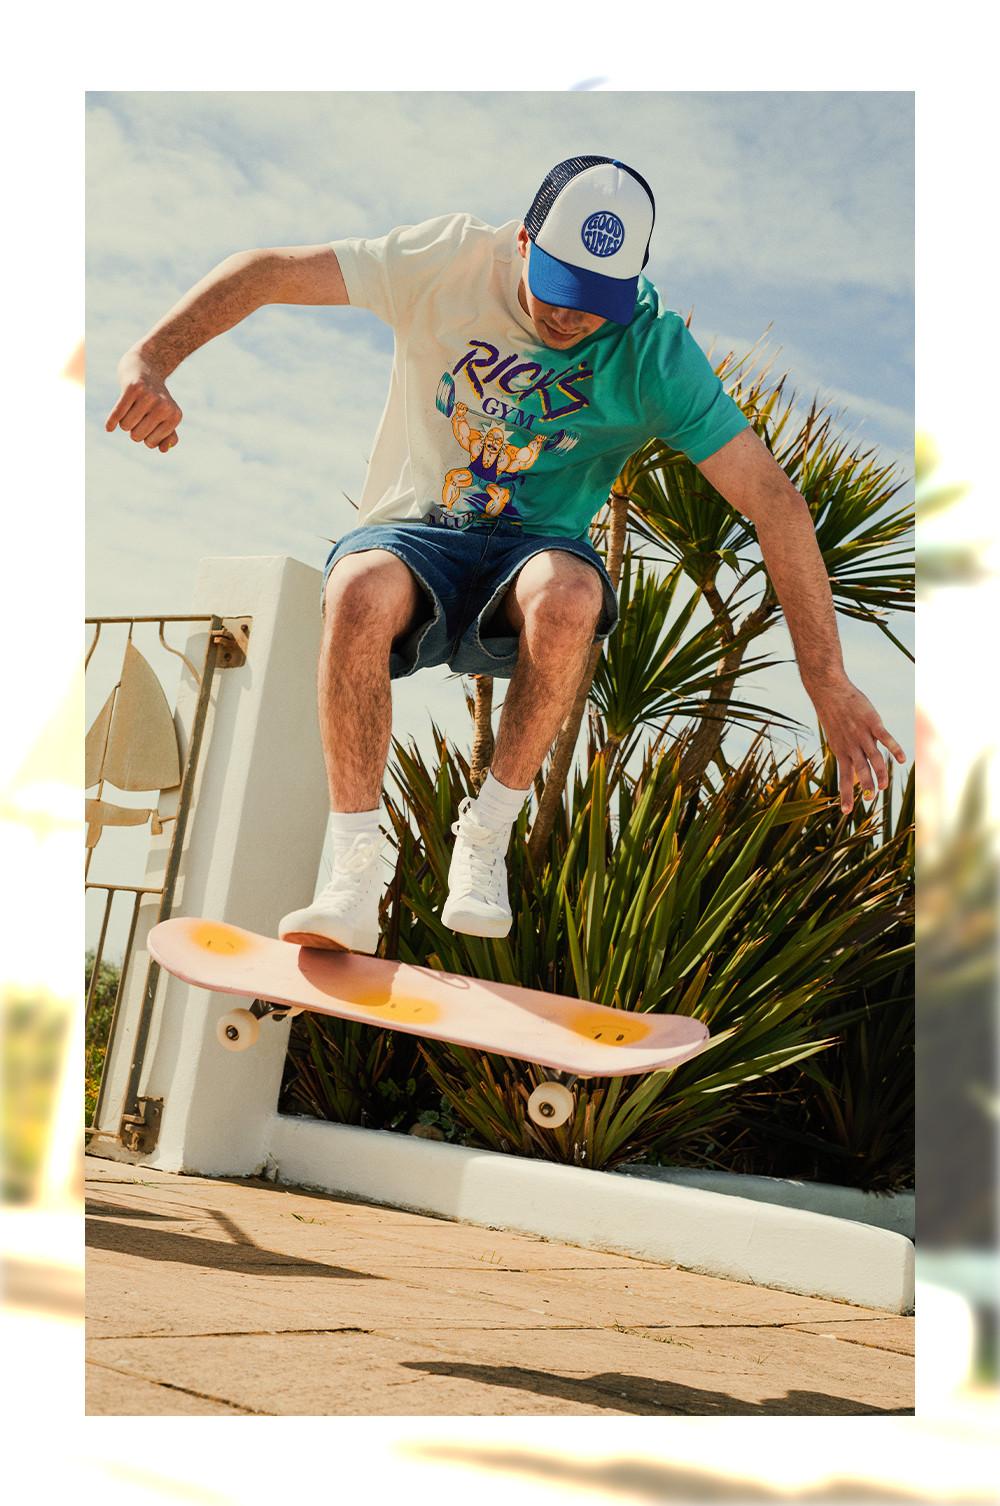 Uomo sullo skateboard